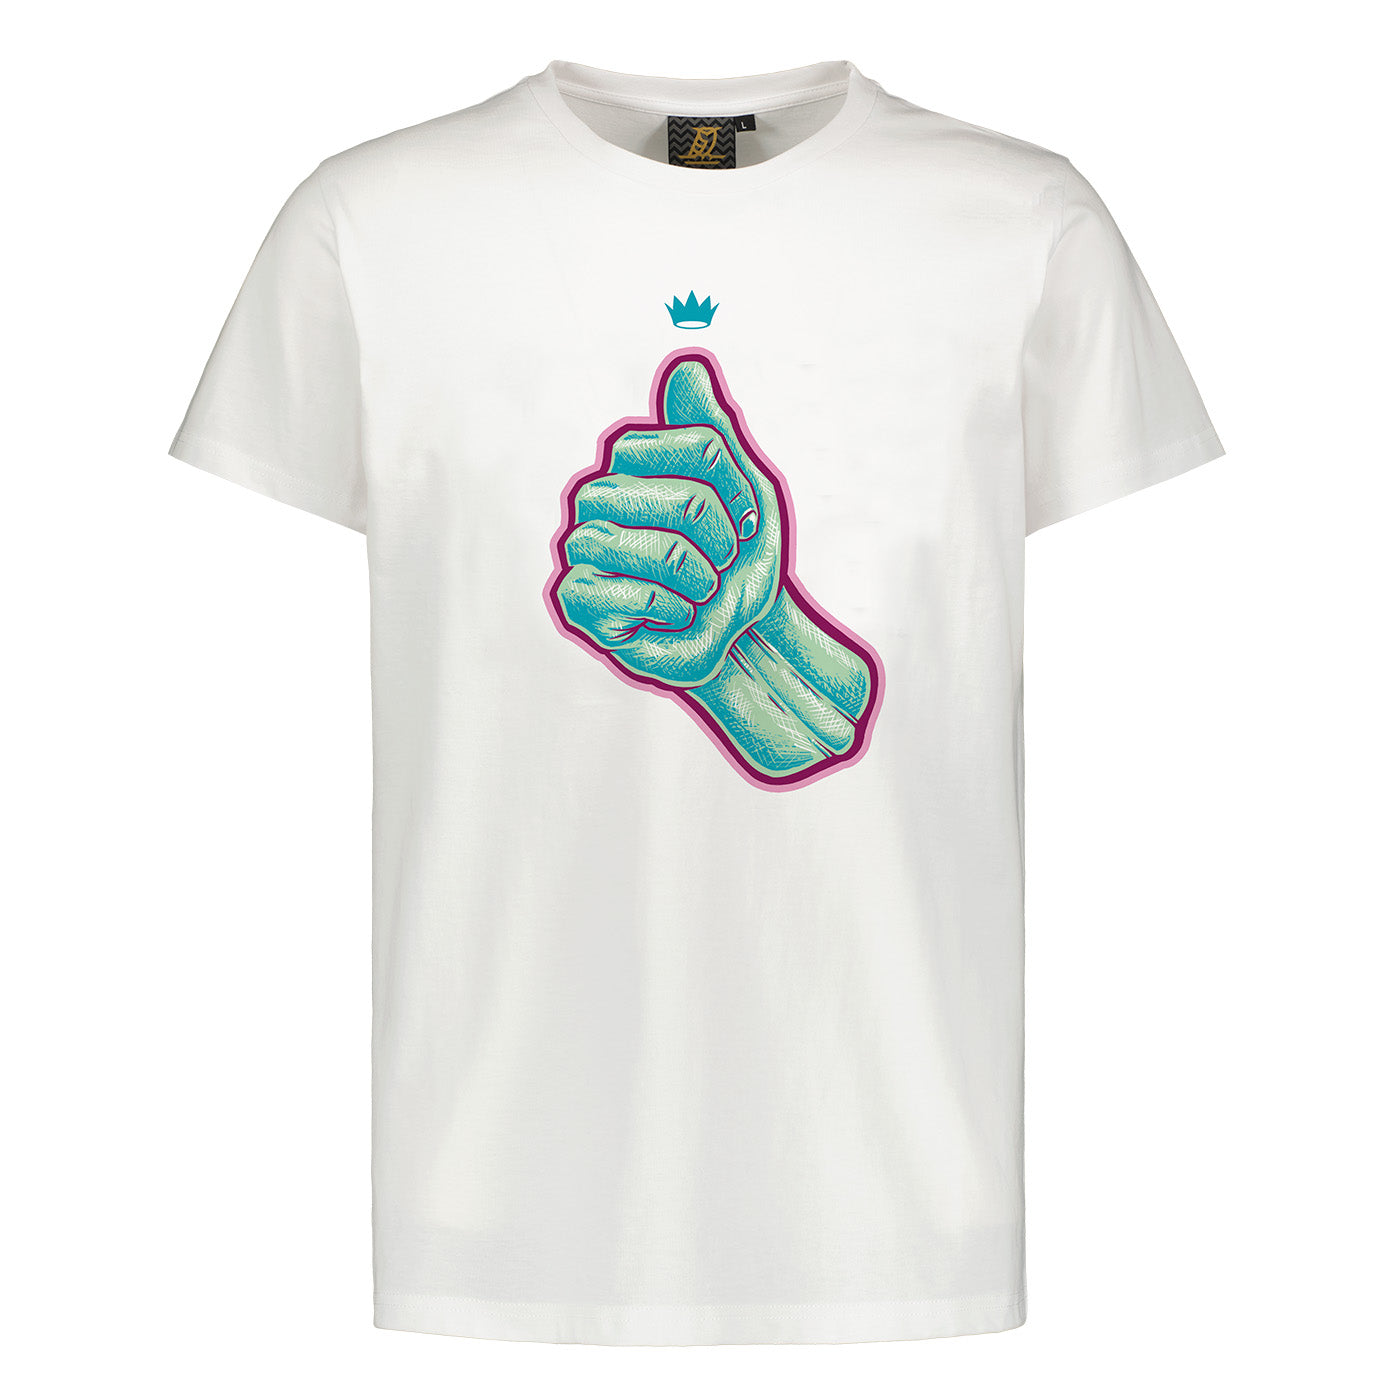 Thumb of Jari Graphic Logo T-shirt, White, Kids